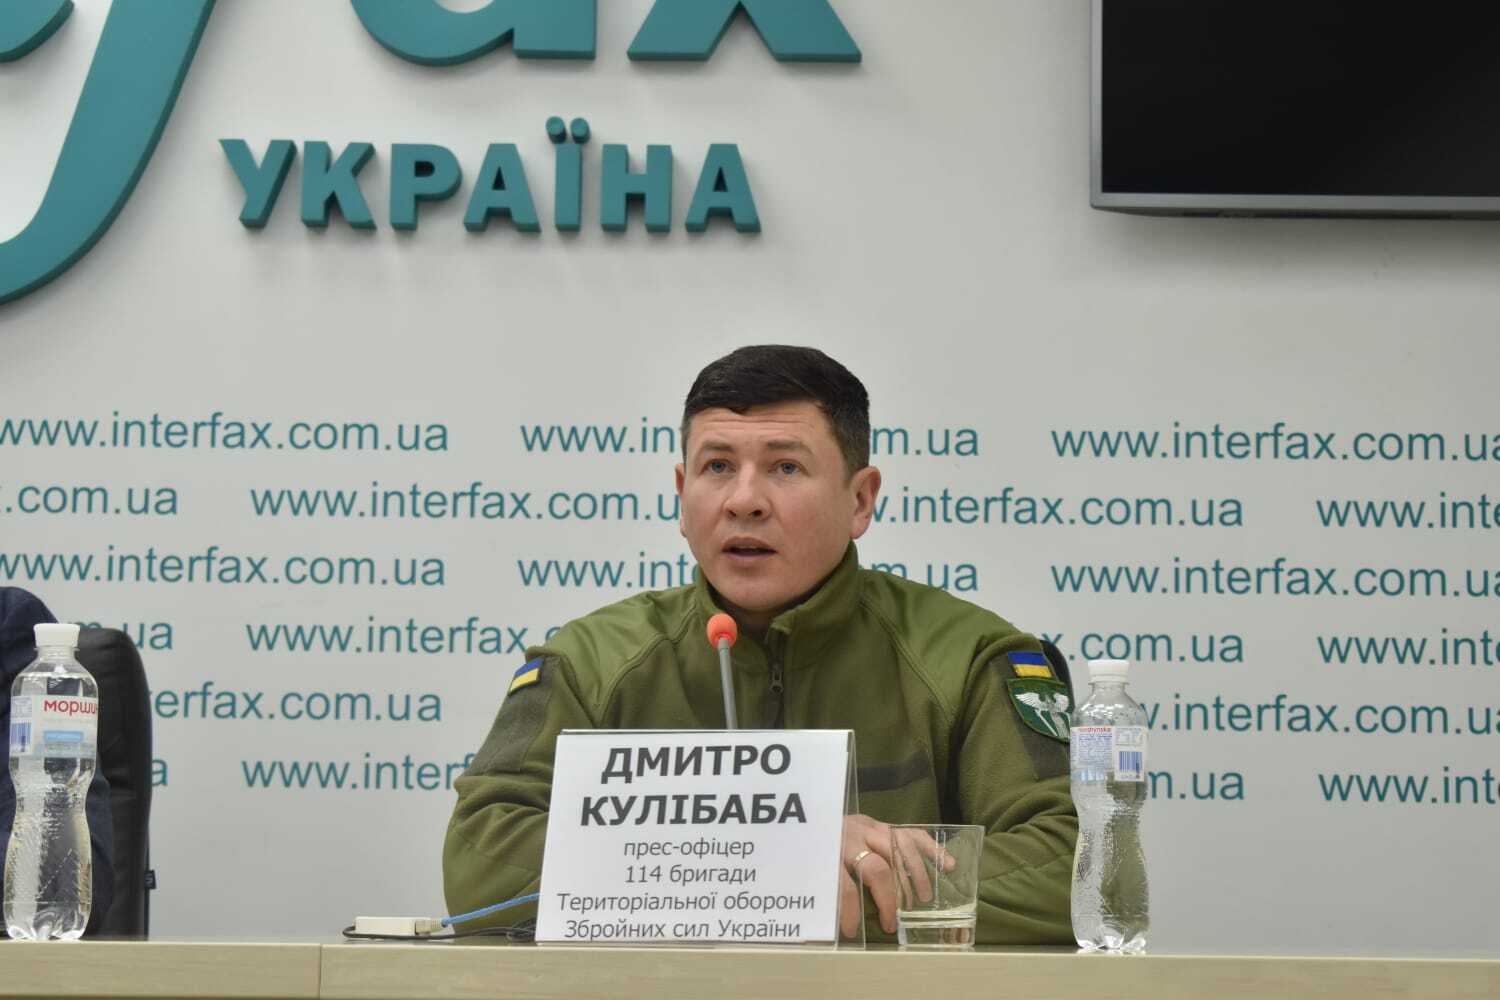 Пресофіцер 114 бригади територіальної оборони ЗСУ Дмитро Кулібабa